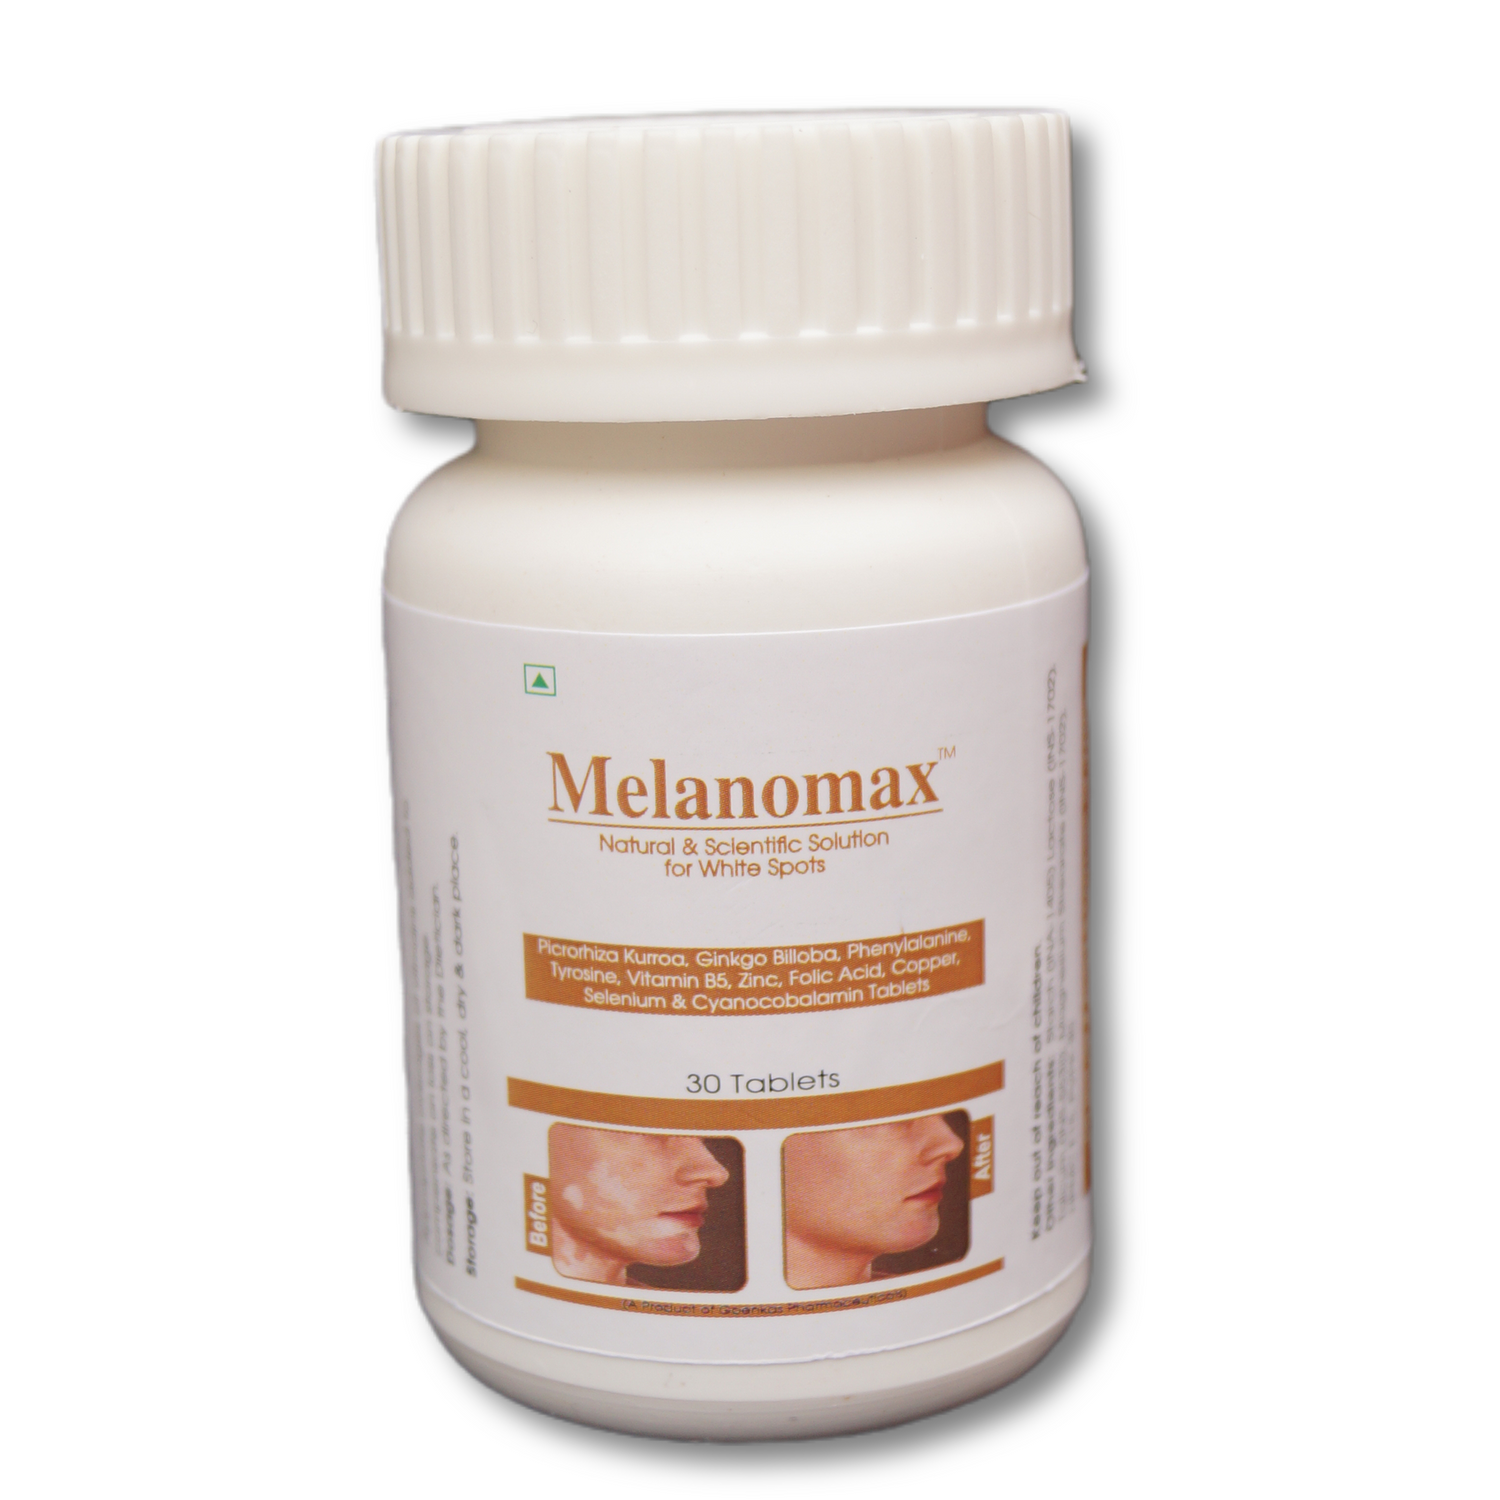 Melanomax - best natural vitamin supplement for White spots and vitiligo management